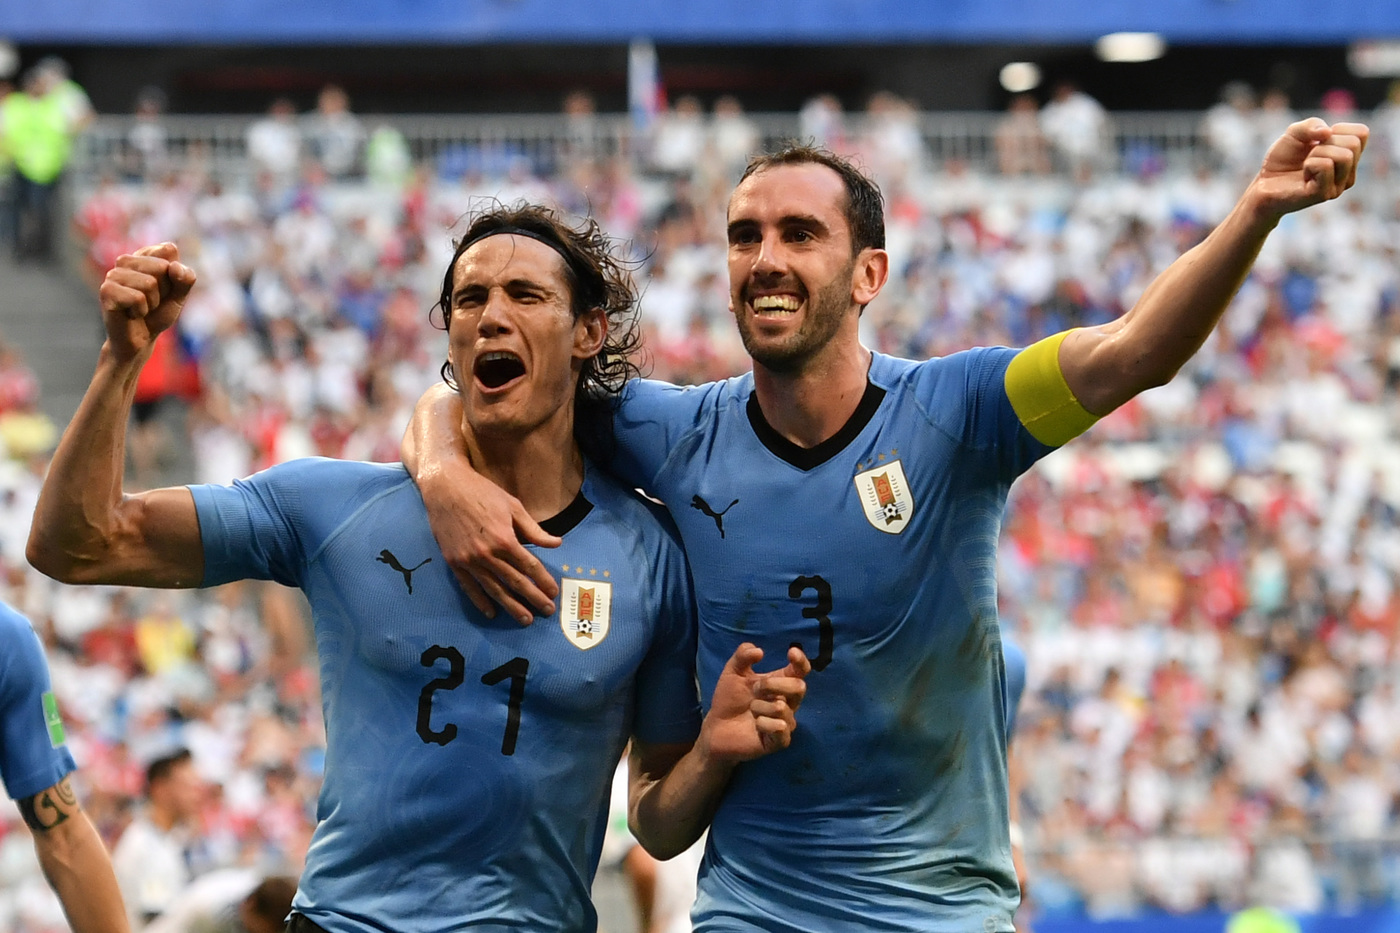 Pronostici chat Blab Live pronostico europei Euro 2020 Copa America 2021 Bolivia-Uruguay marcatori Cavani Godin